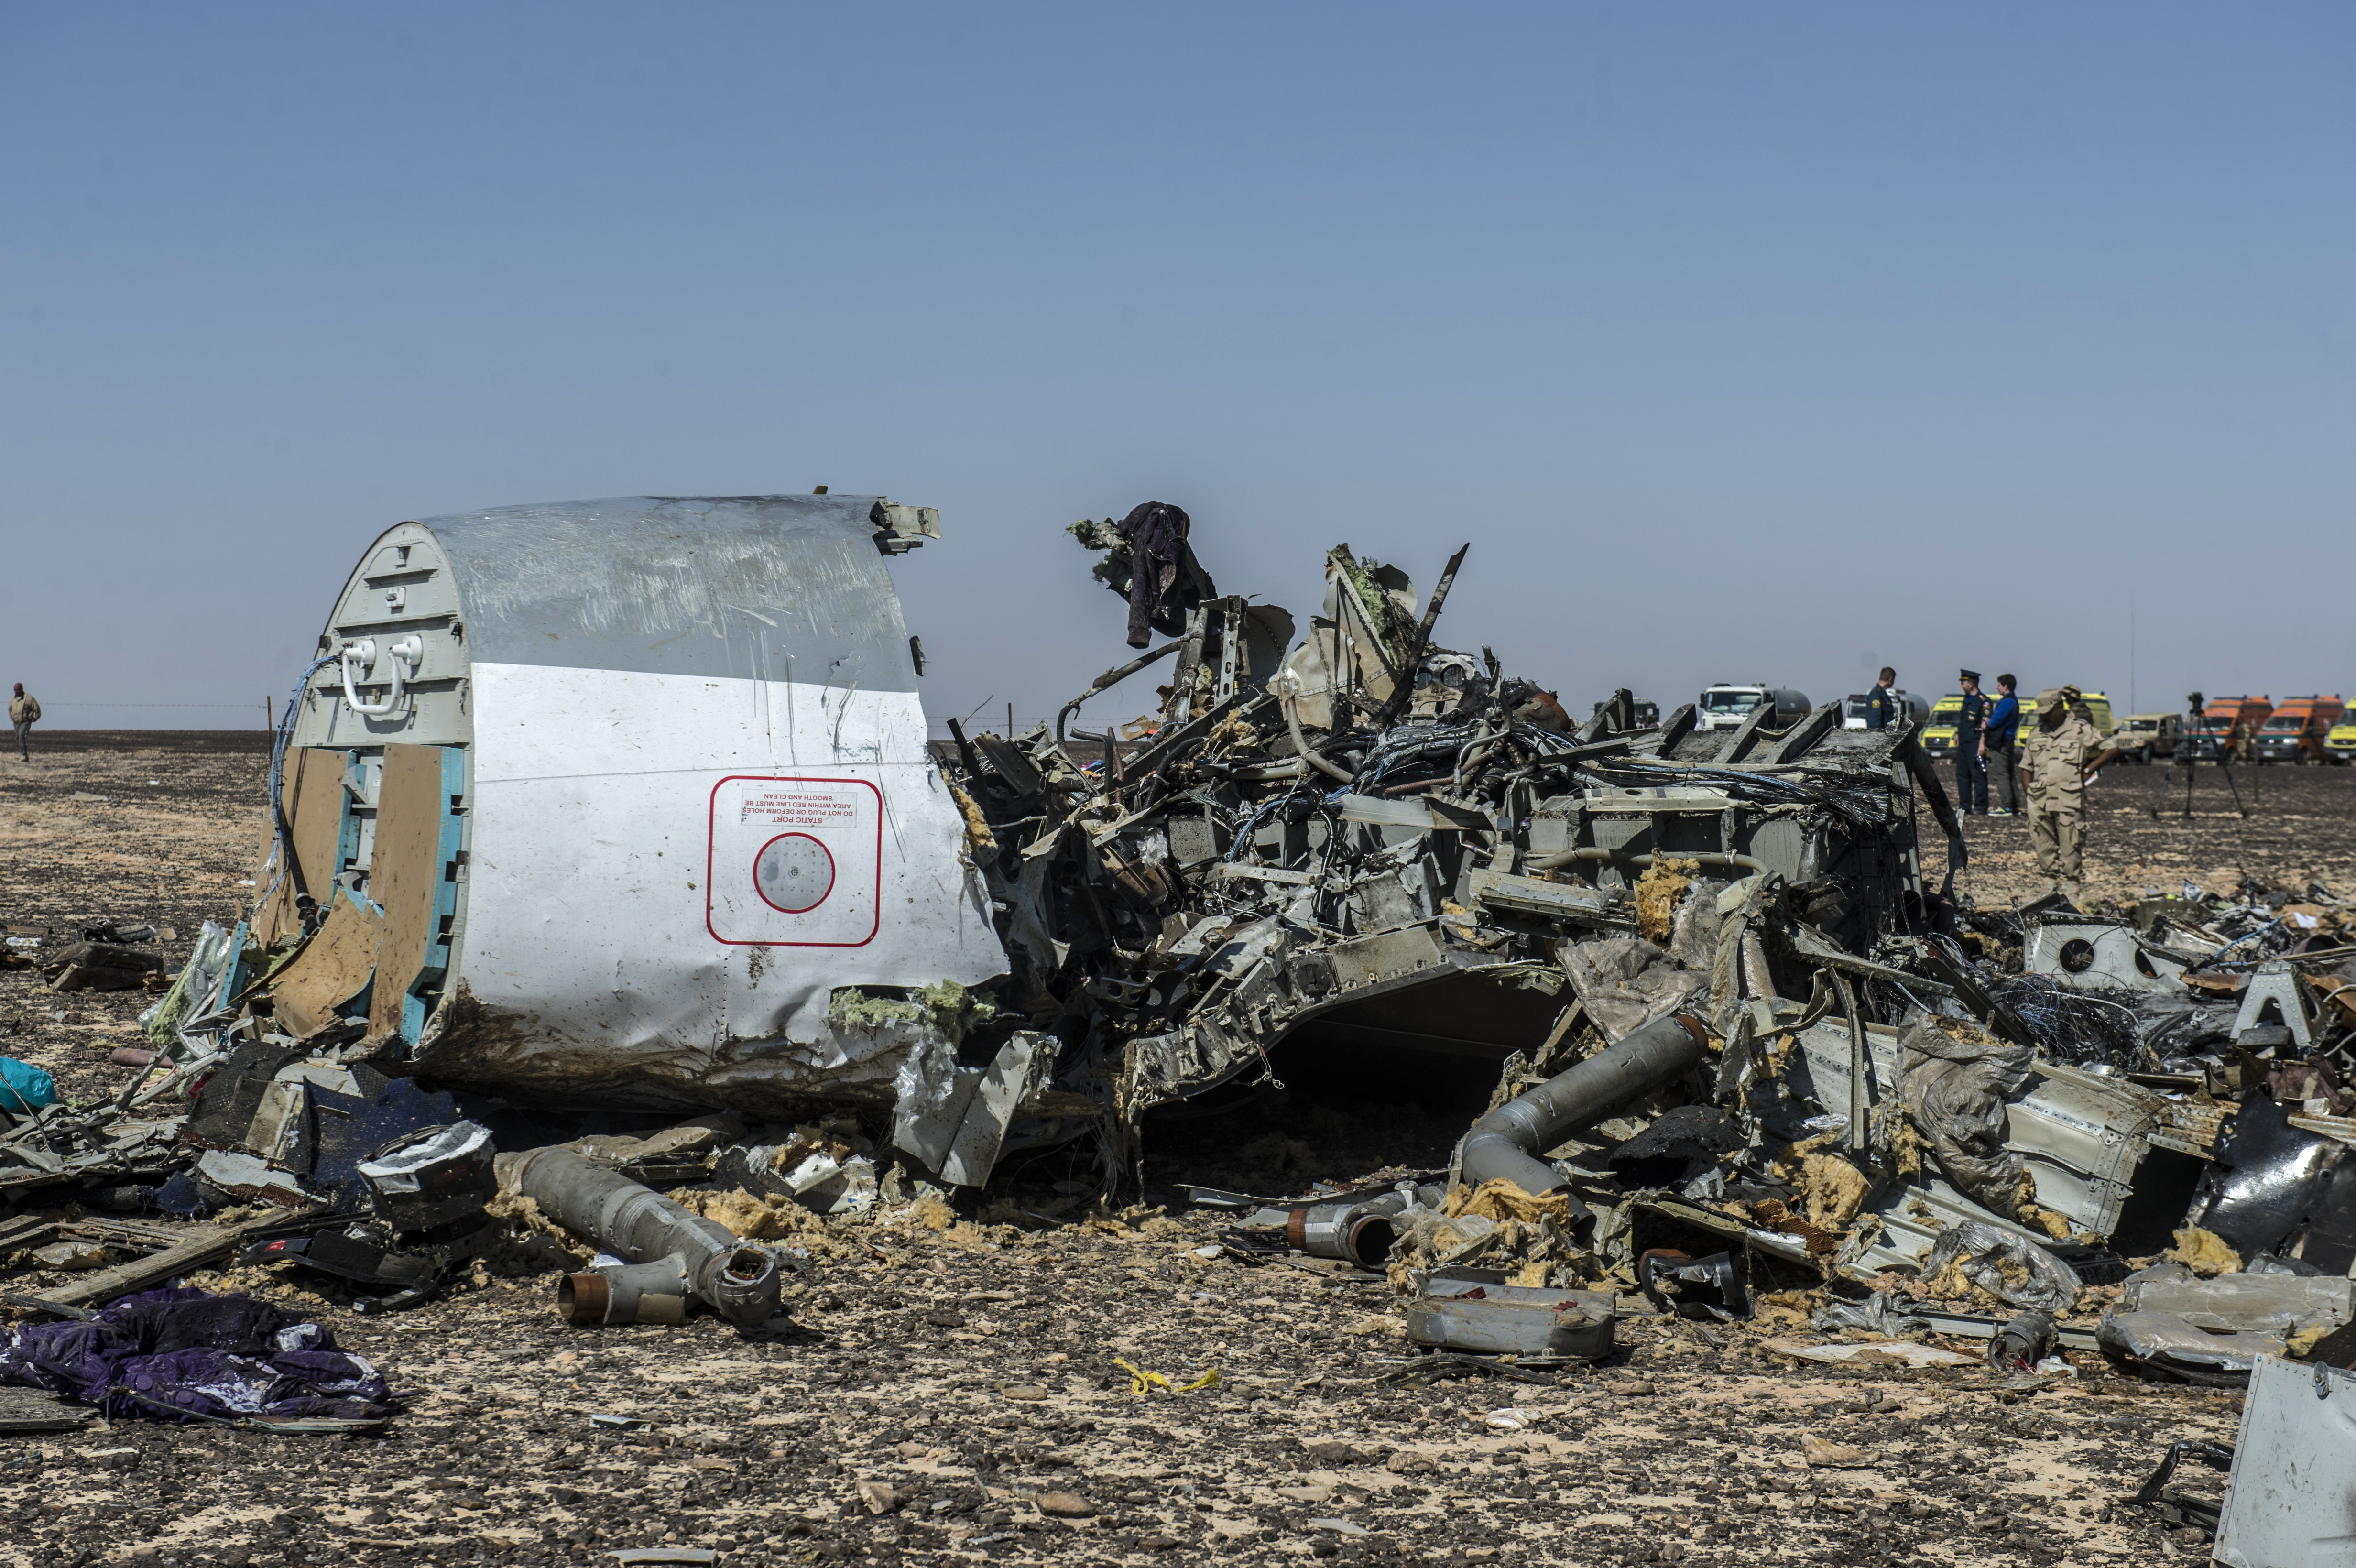 Fluggesellschaft: Anschlag auf Flugzeug ist nicht auszuschließen